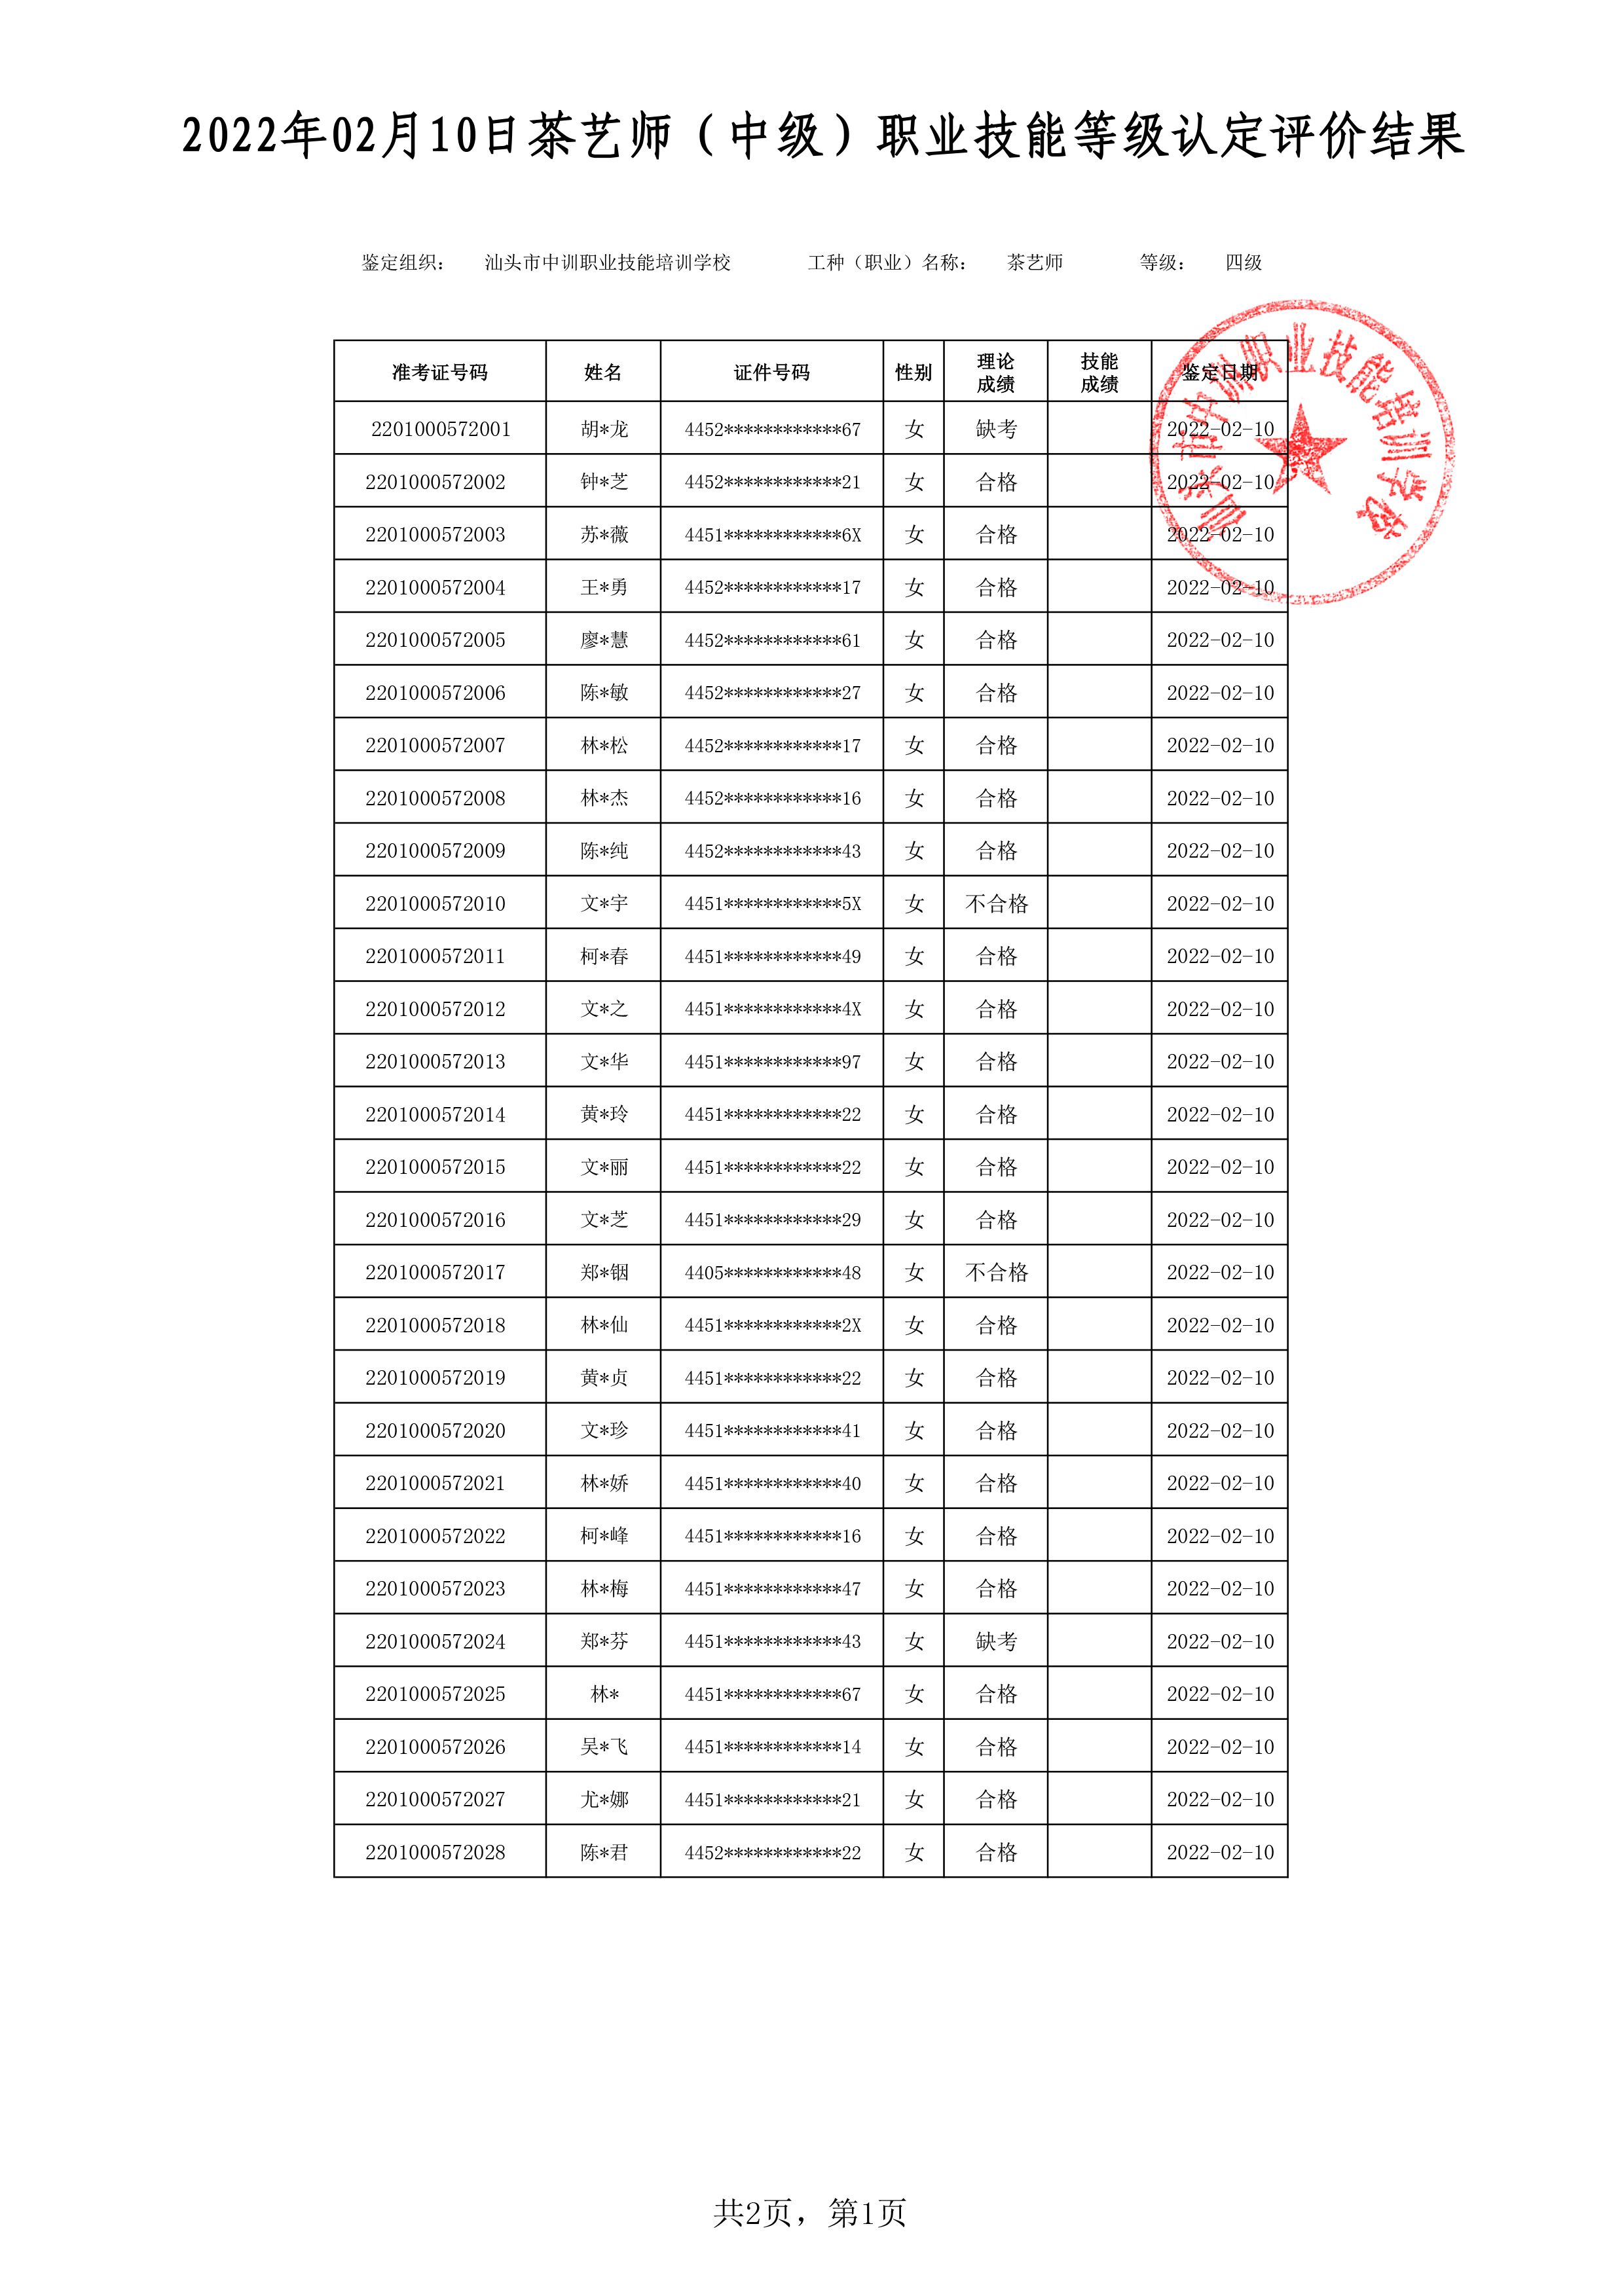 22-02-10四级茶艺师考试鉴定名册表 -1 副本.jpg